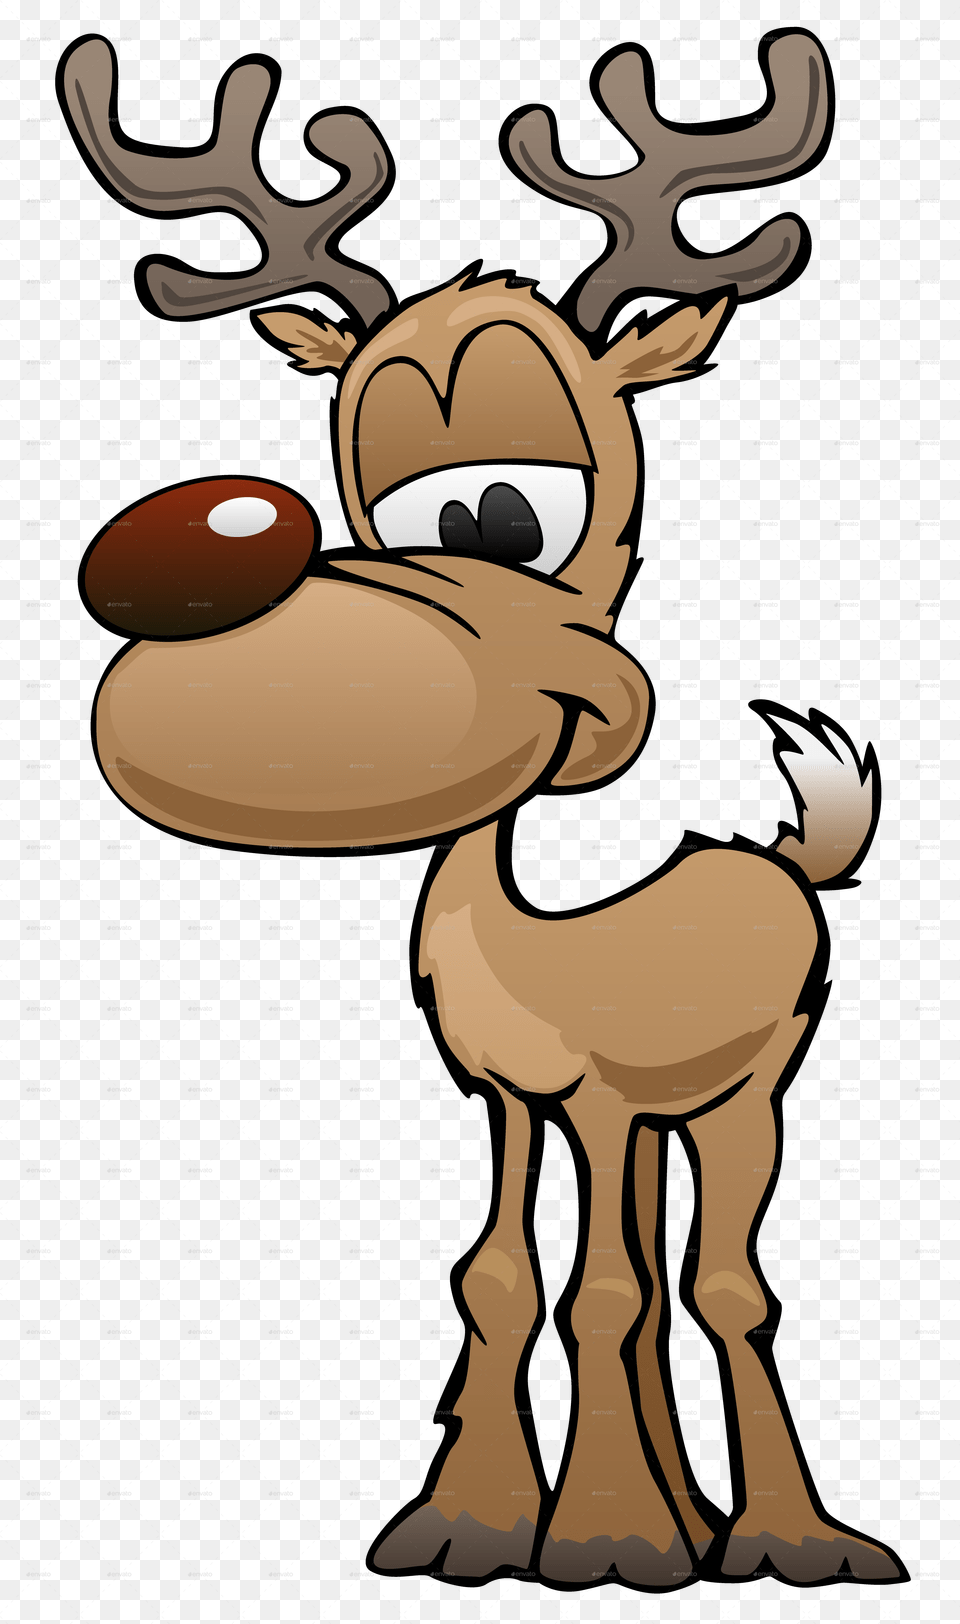 Deer Cartoon Characters, Animal, Mammal, Wildlife, Antelope Png